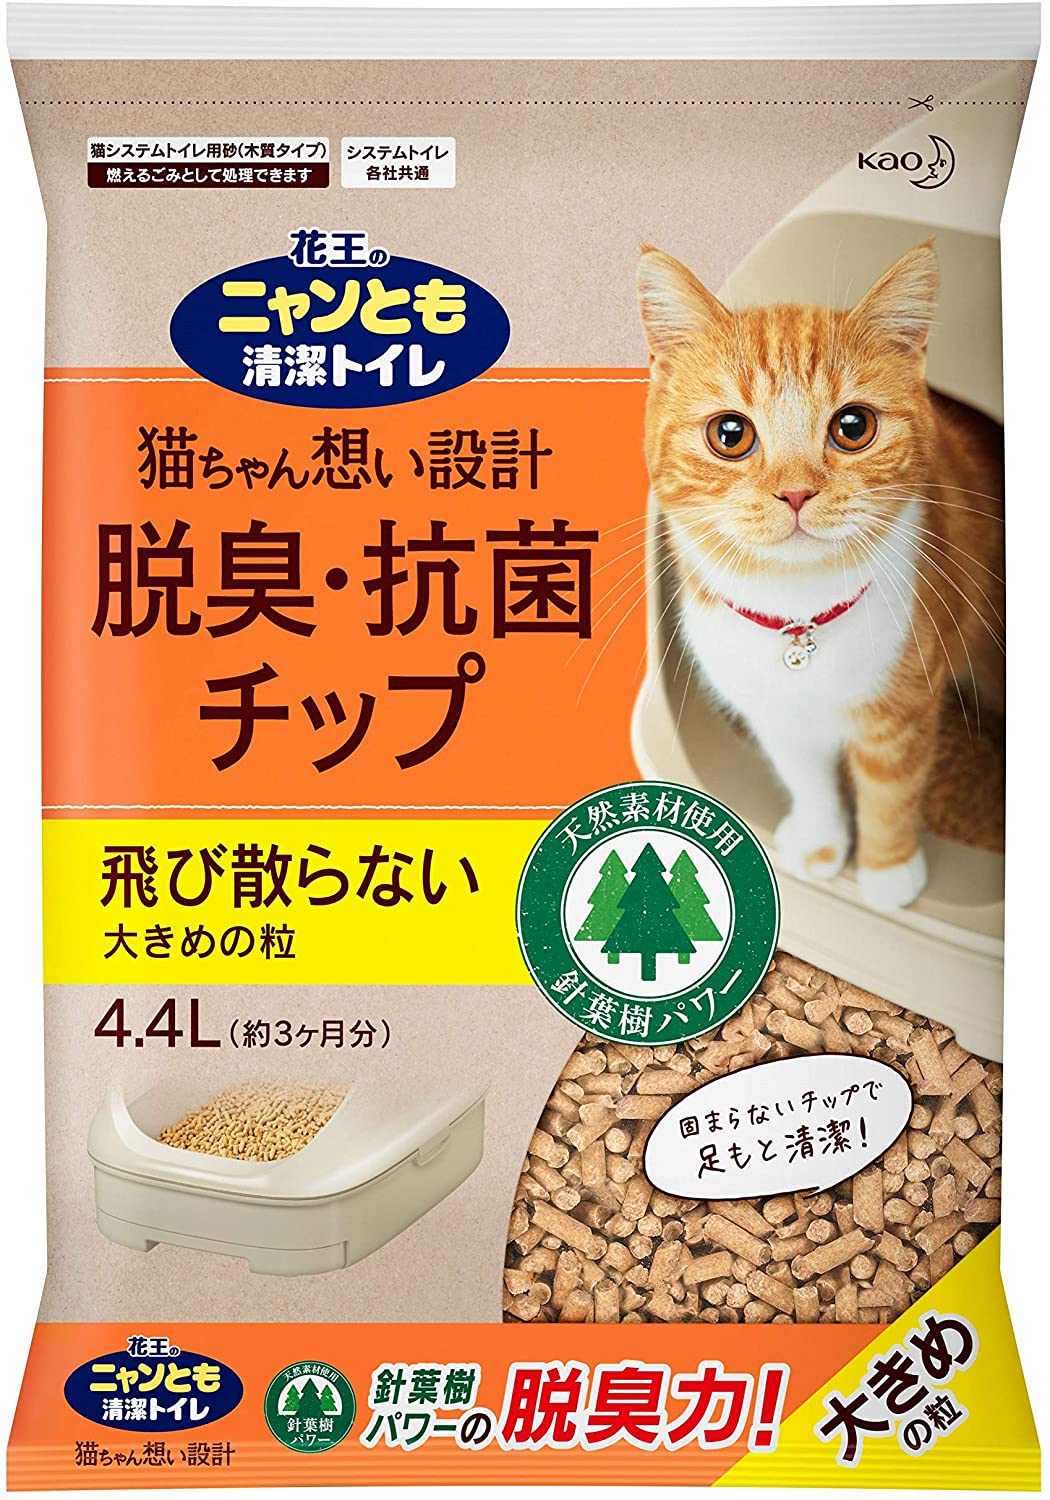 脱臭・抗菌チップ 大容量 大きめ 4.4L [猫砂] システムトイレ用 4.4リットル (x 1)